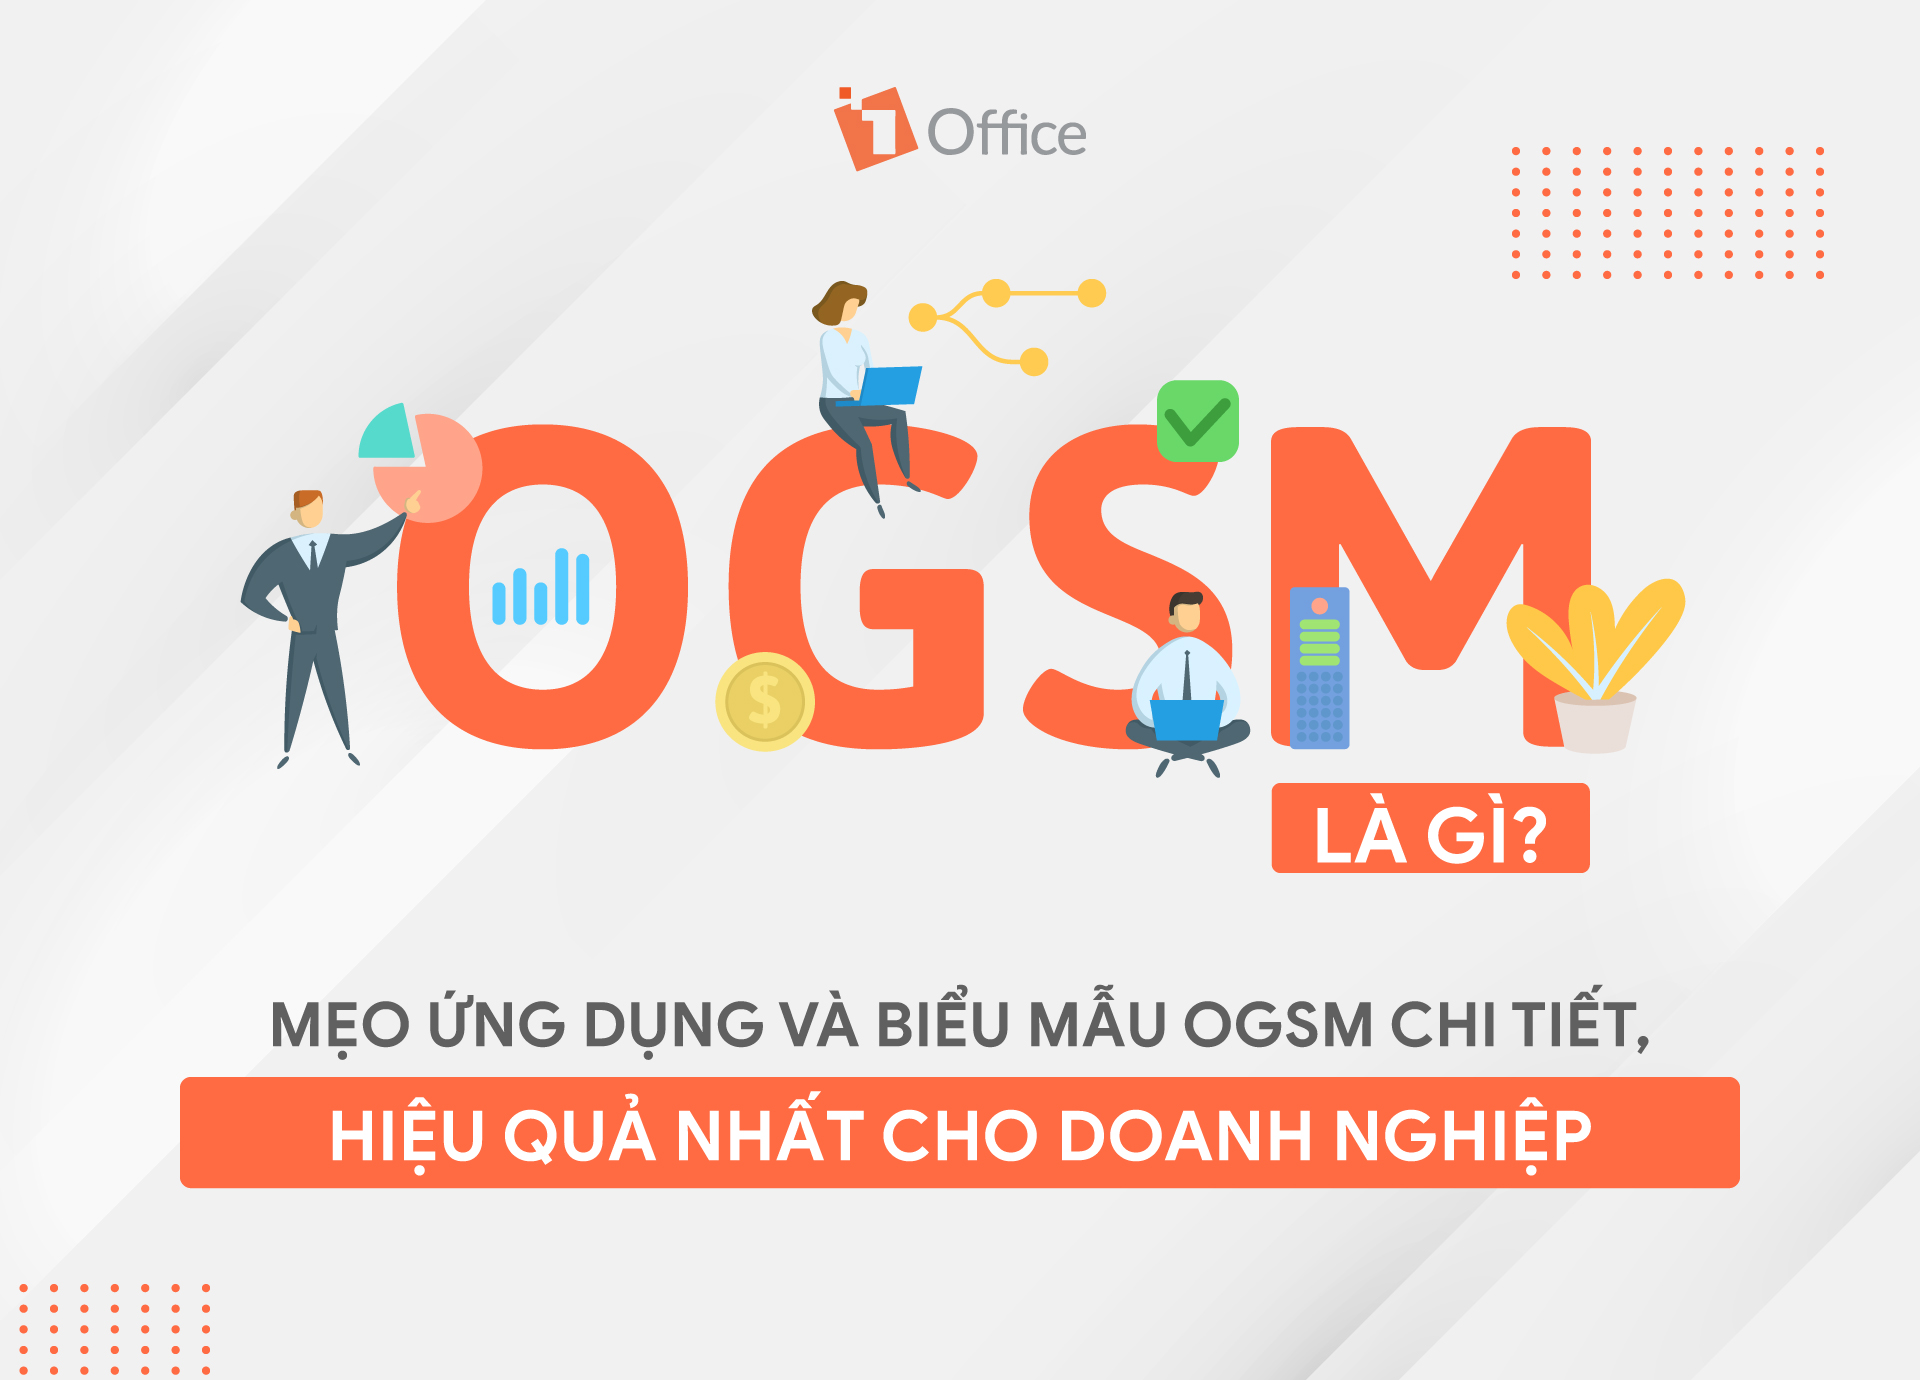 OGSM là gì? Mẹo ứng dụng và biểu mẫu OGSM chi tiết, hiệu quả nhất cho doanh nghiệp